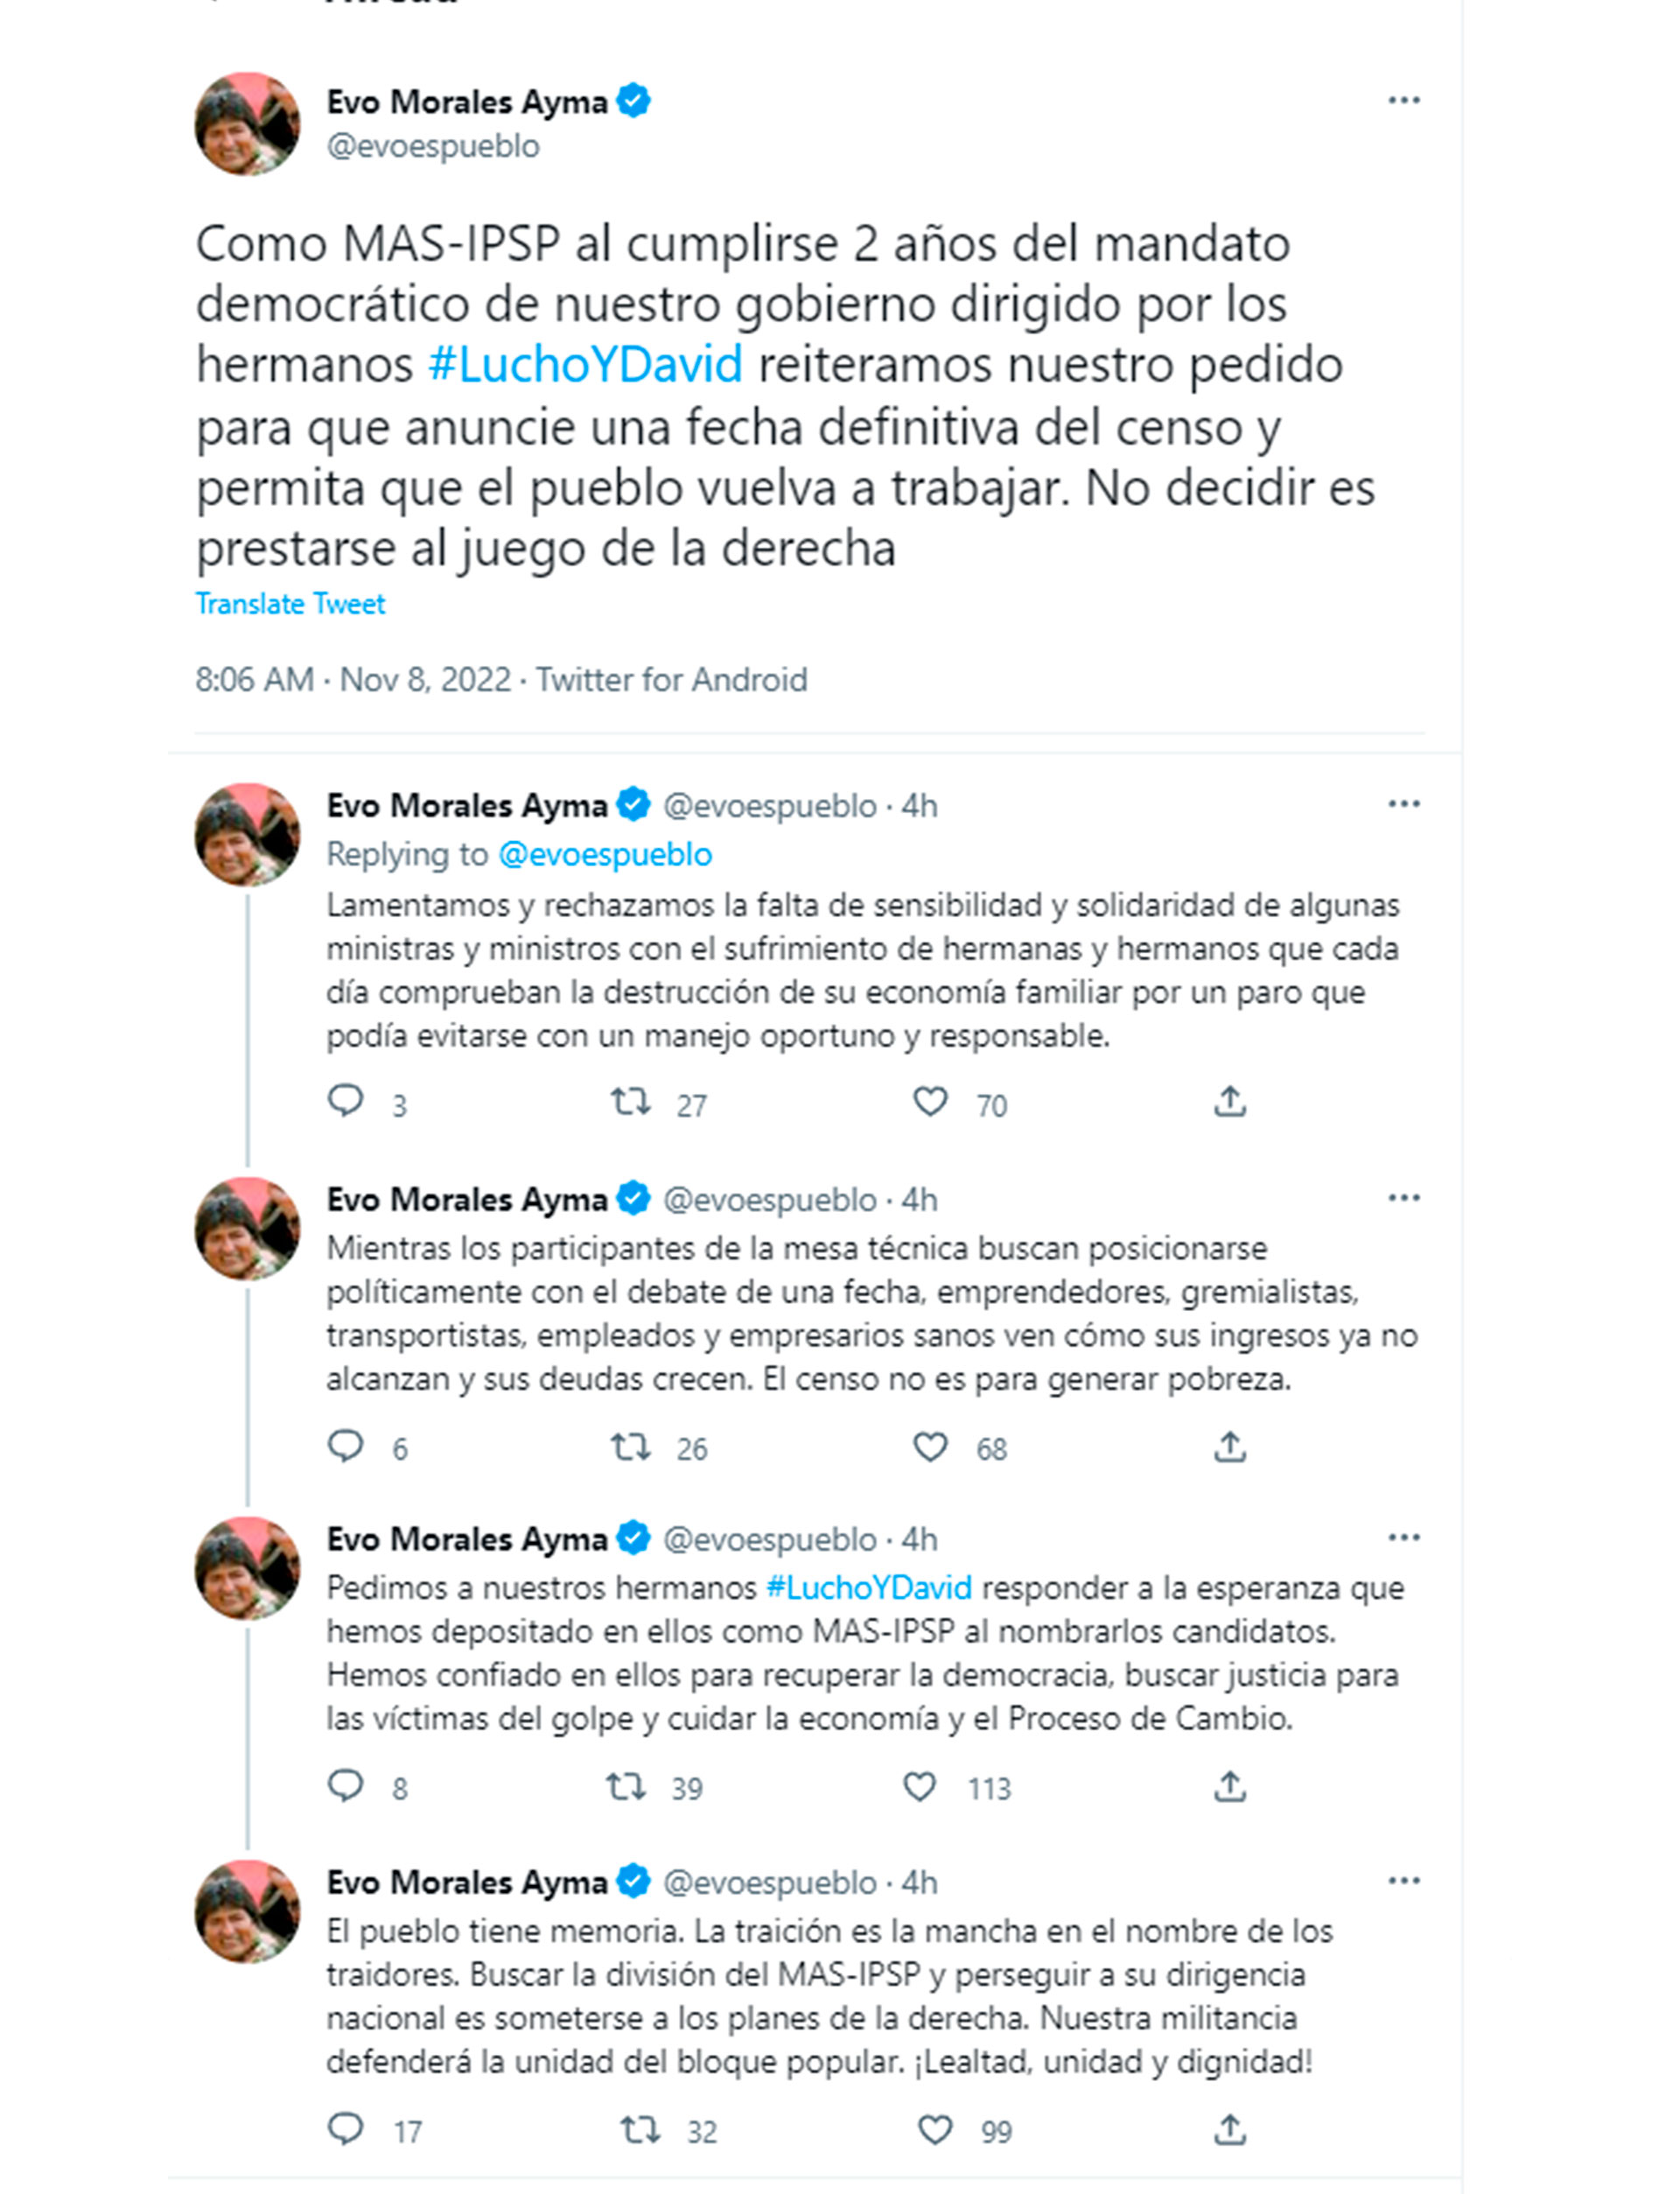 Los mensajes de Evo Morales en Twitter